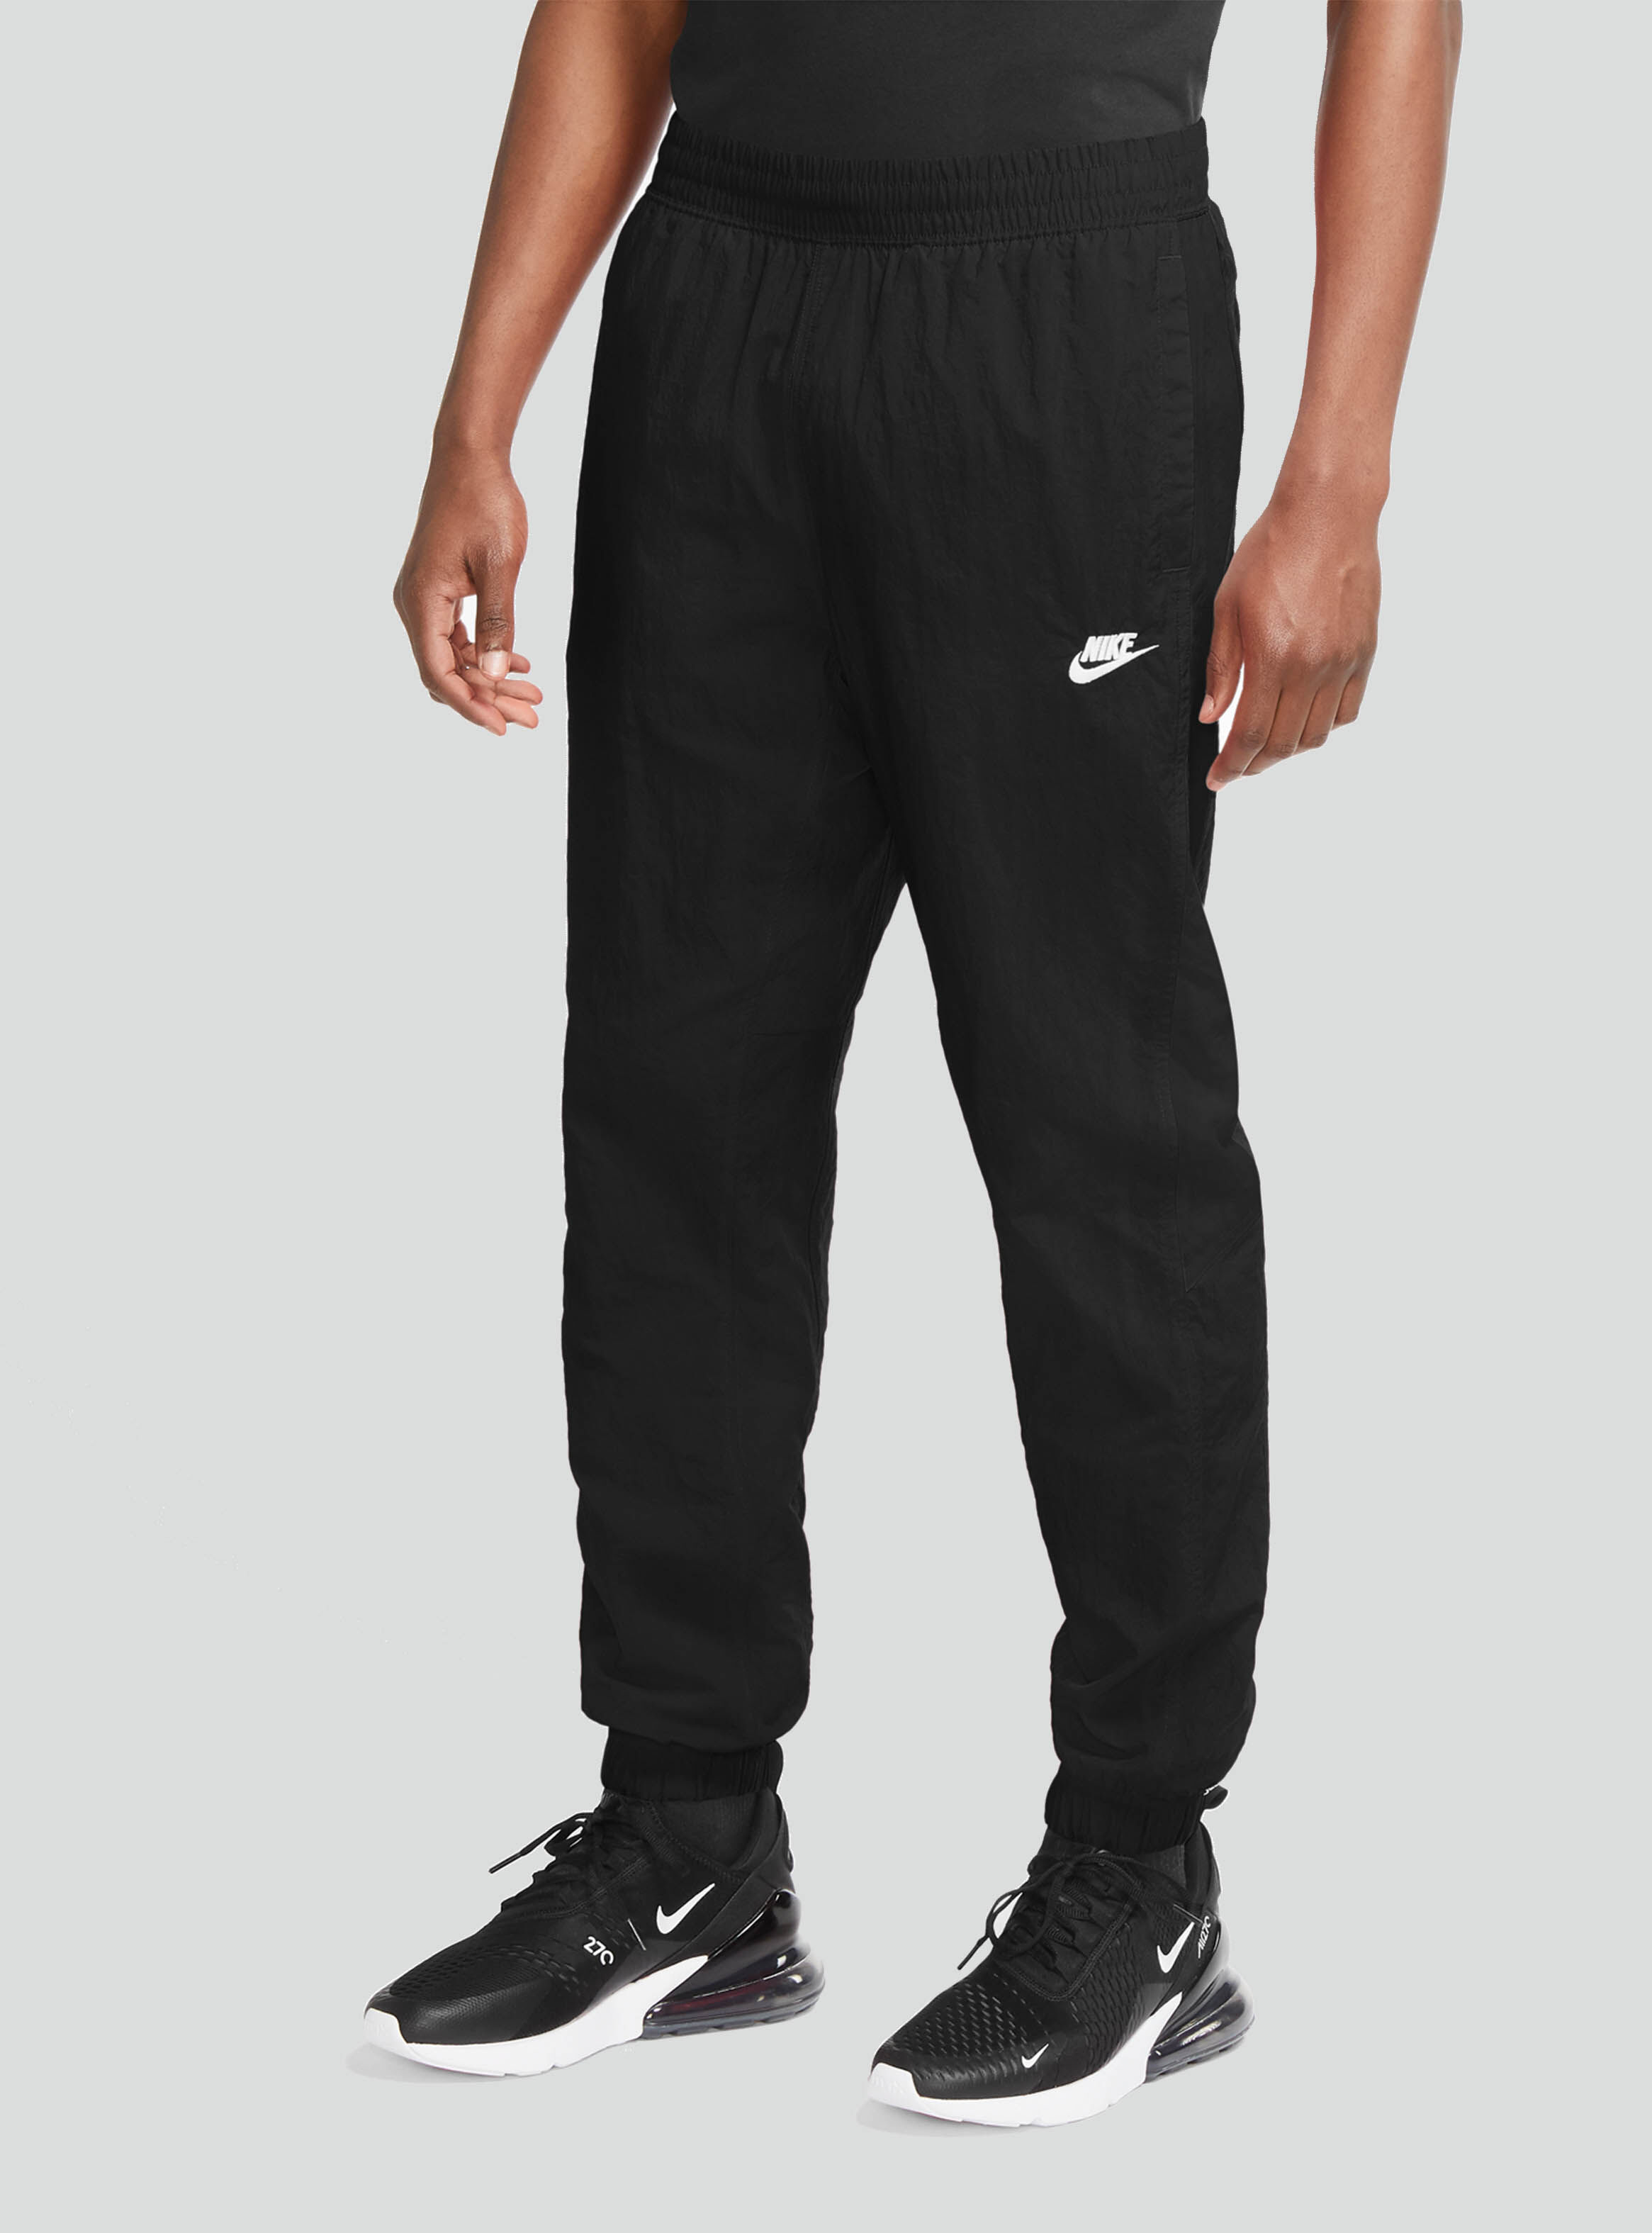 Pantalón Nike Sportswear Hombre - Pantalones y Buzos | Paris.cl